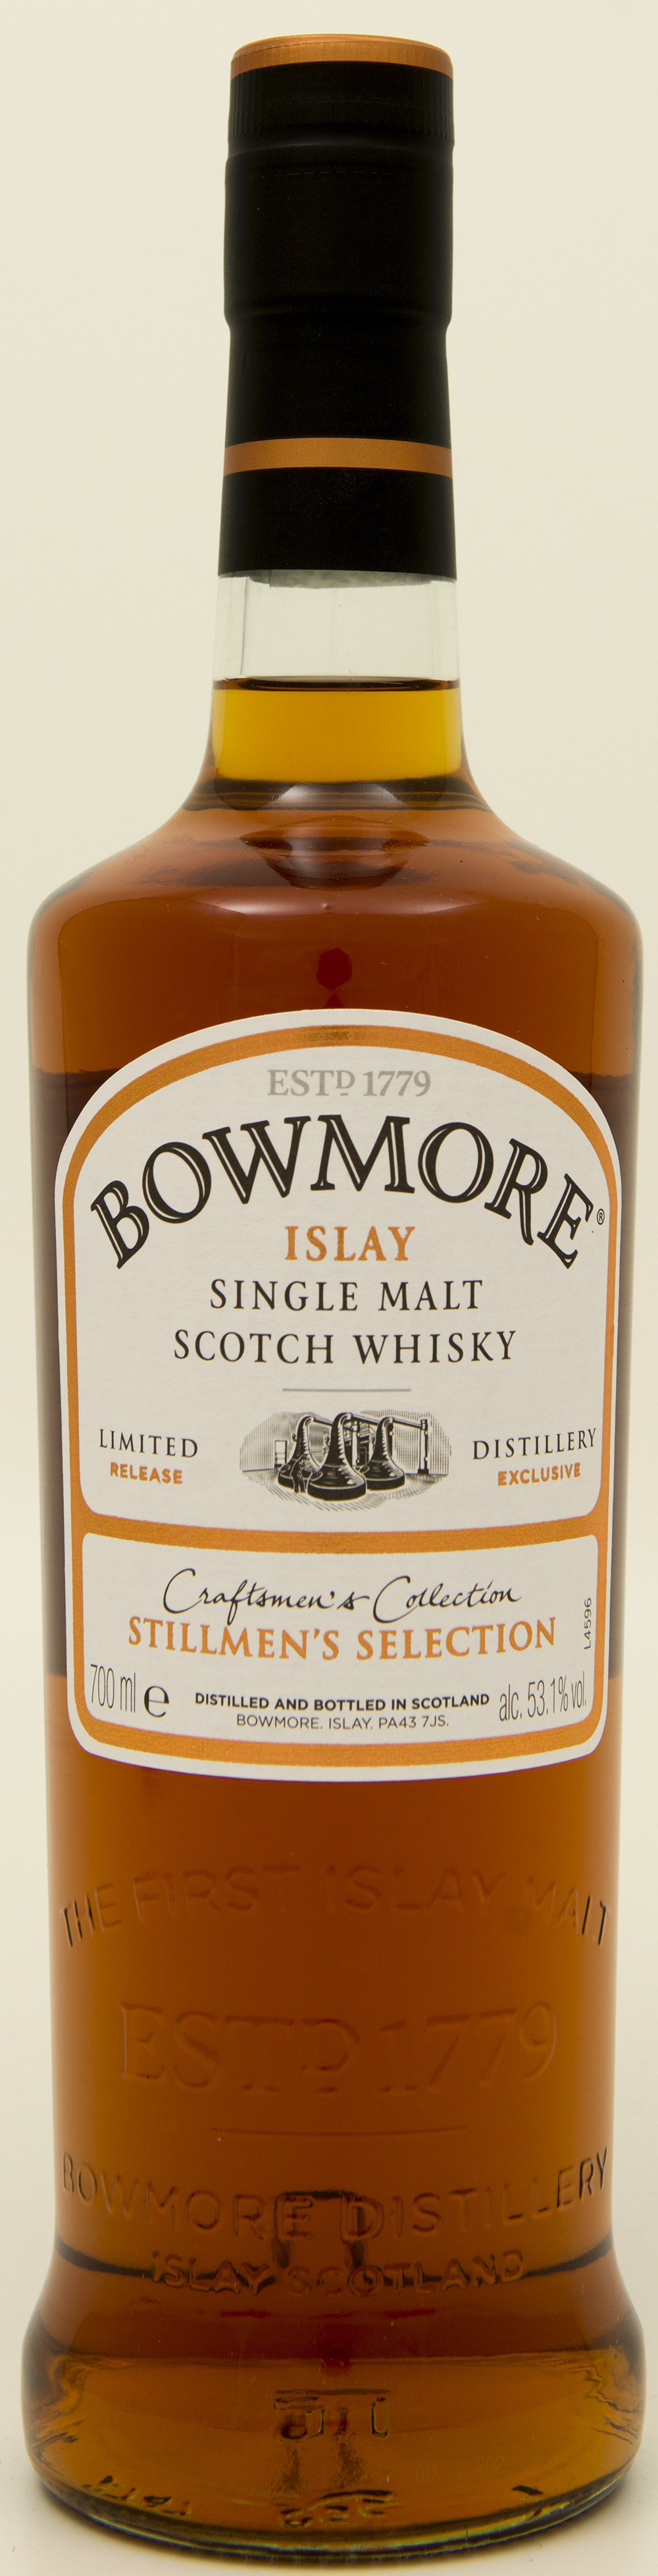 Billede: DSC_3223 - Bowmore Stillmen's Selection - bottle front.jpg